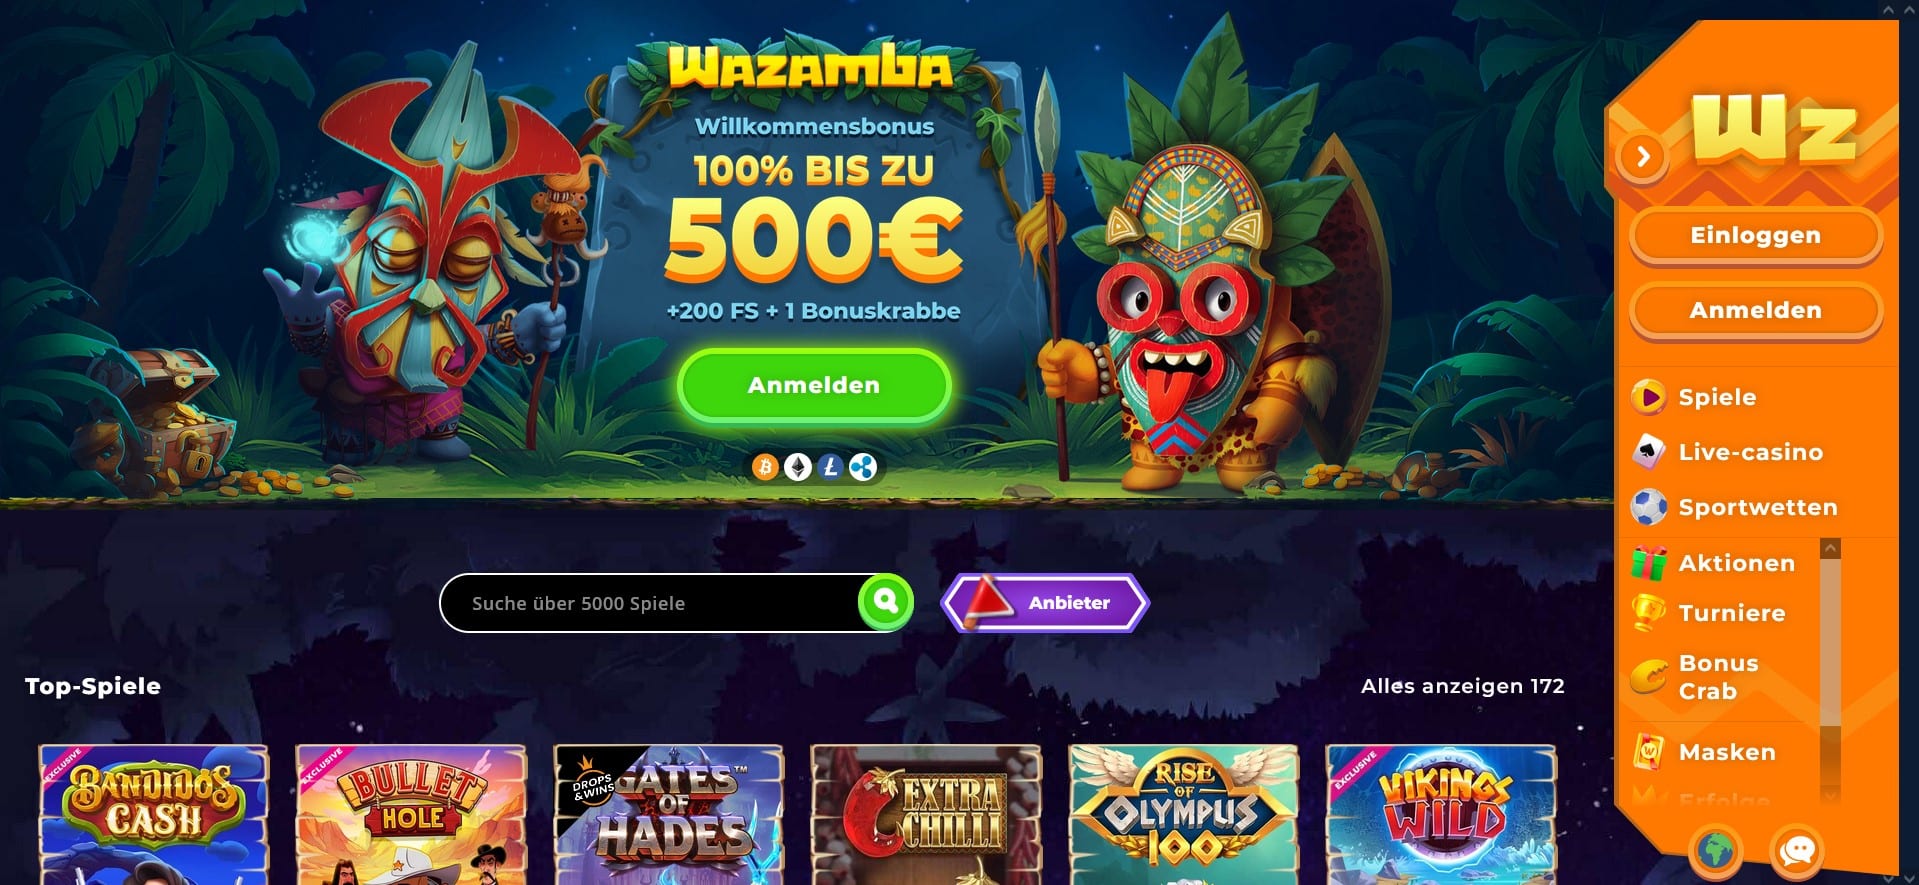 Wazamba – بونص بنسبة 120% ويصل إلى 500 دولار لاستخدامه في العاب قمار اون لاين